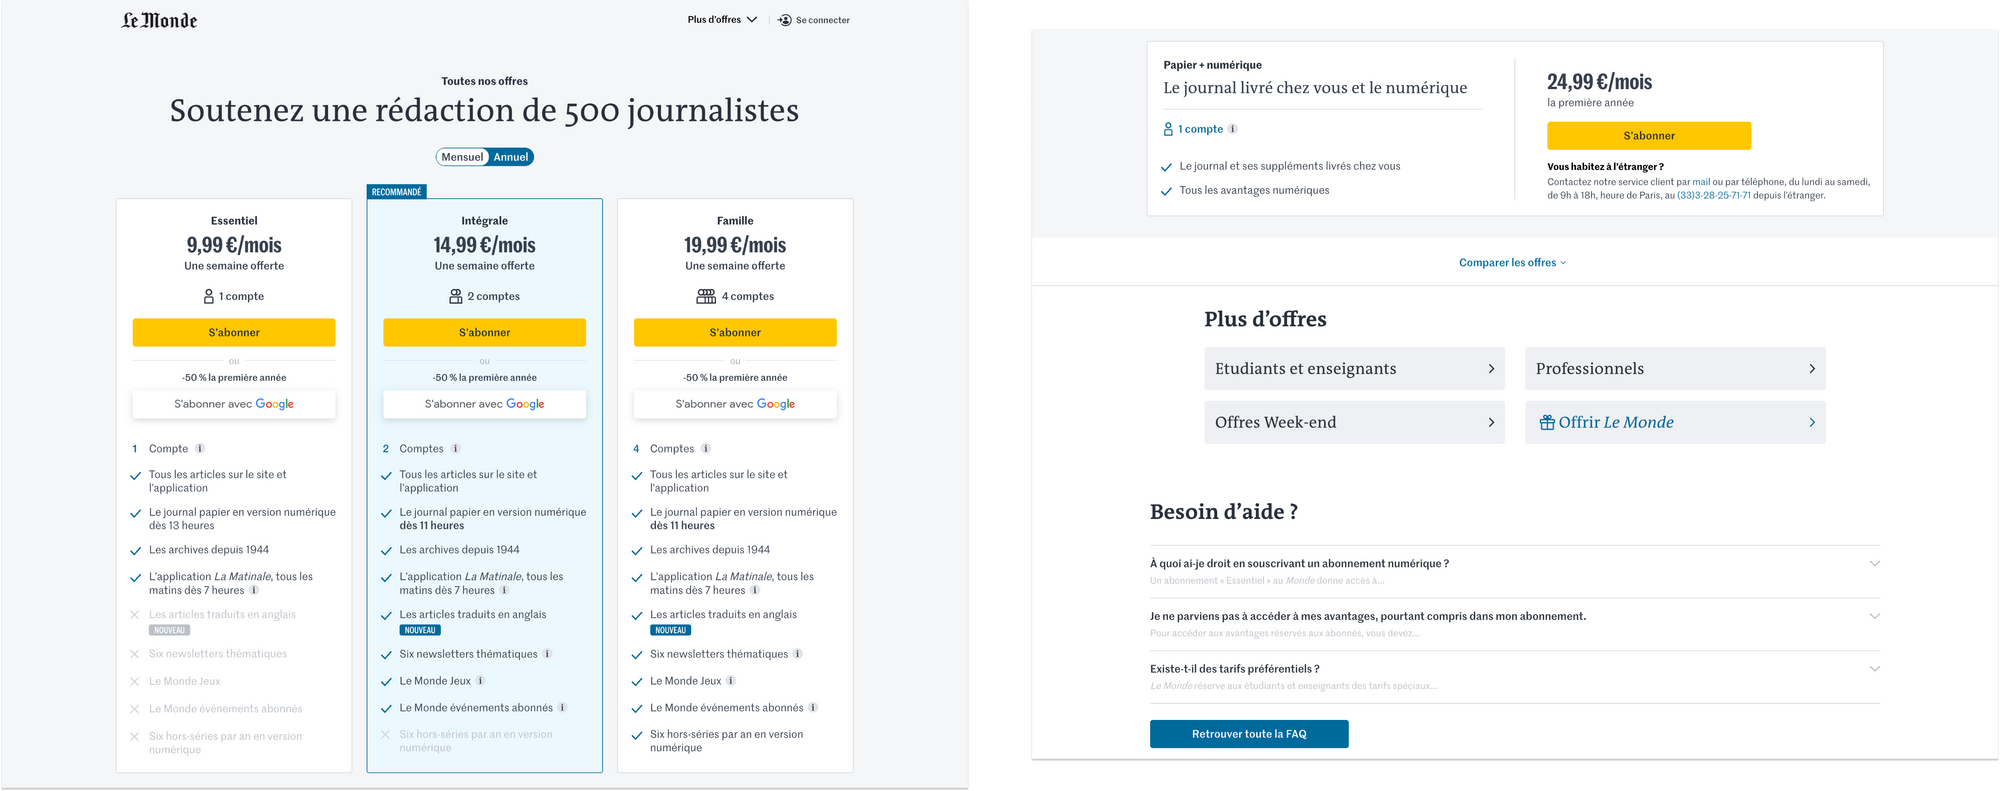 Décryptage des pages d’abonnement de média français